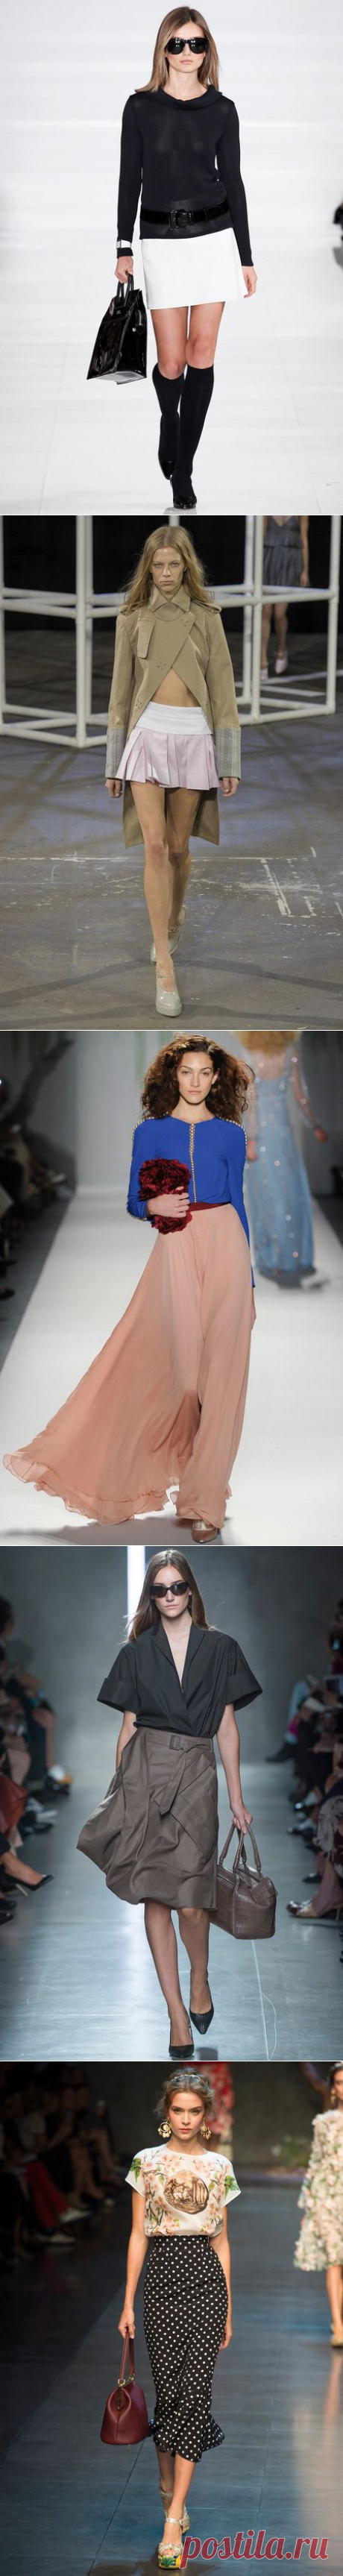 Модные юбки лета 2014 - подиум - Модные показы и fashion-тренды на ETOYA.RU!